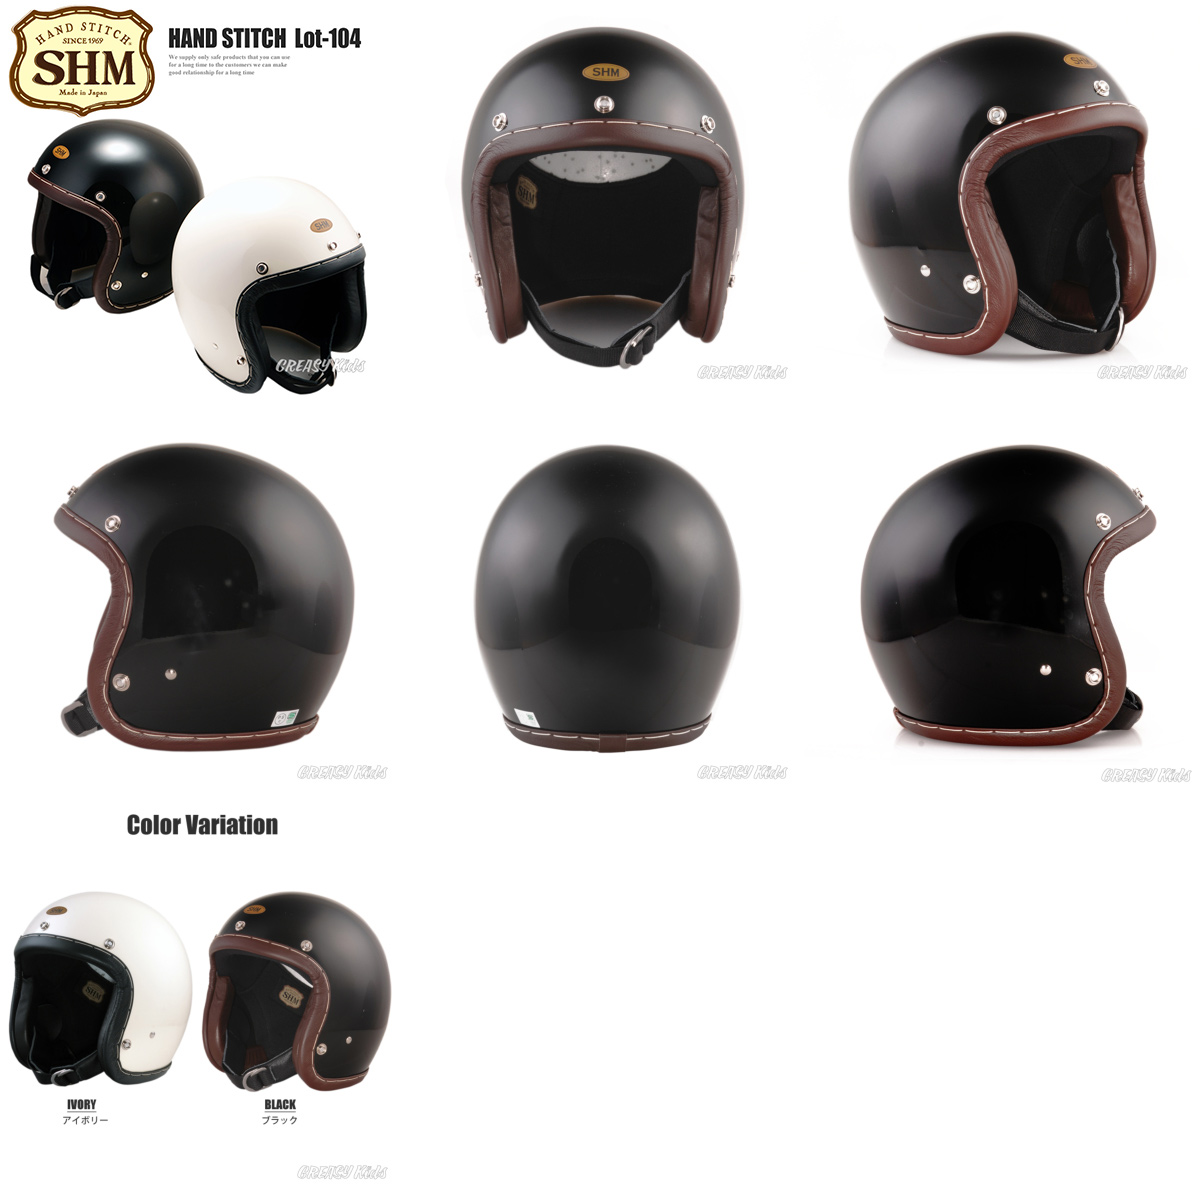 ブランド雑貨総合 HAND STITCH Lot-104 ジェットヘルメット ブラック S 55cm〜56cm SHM